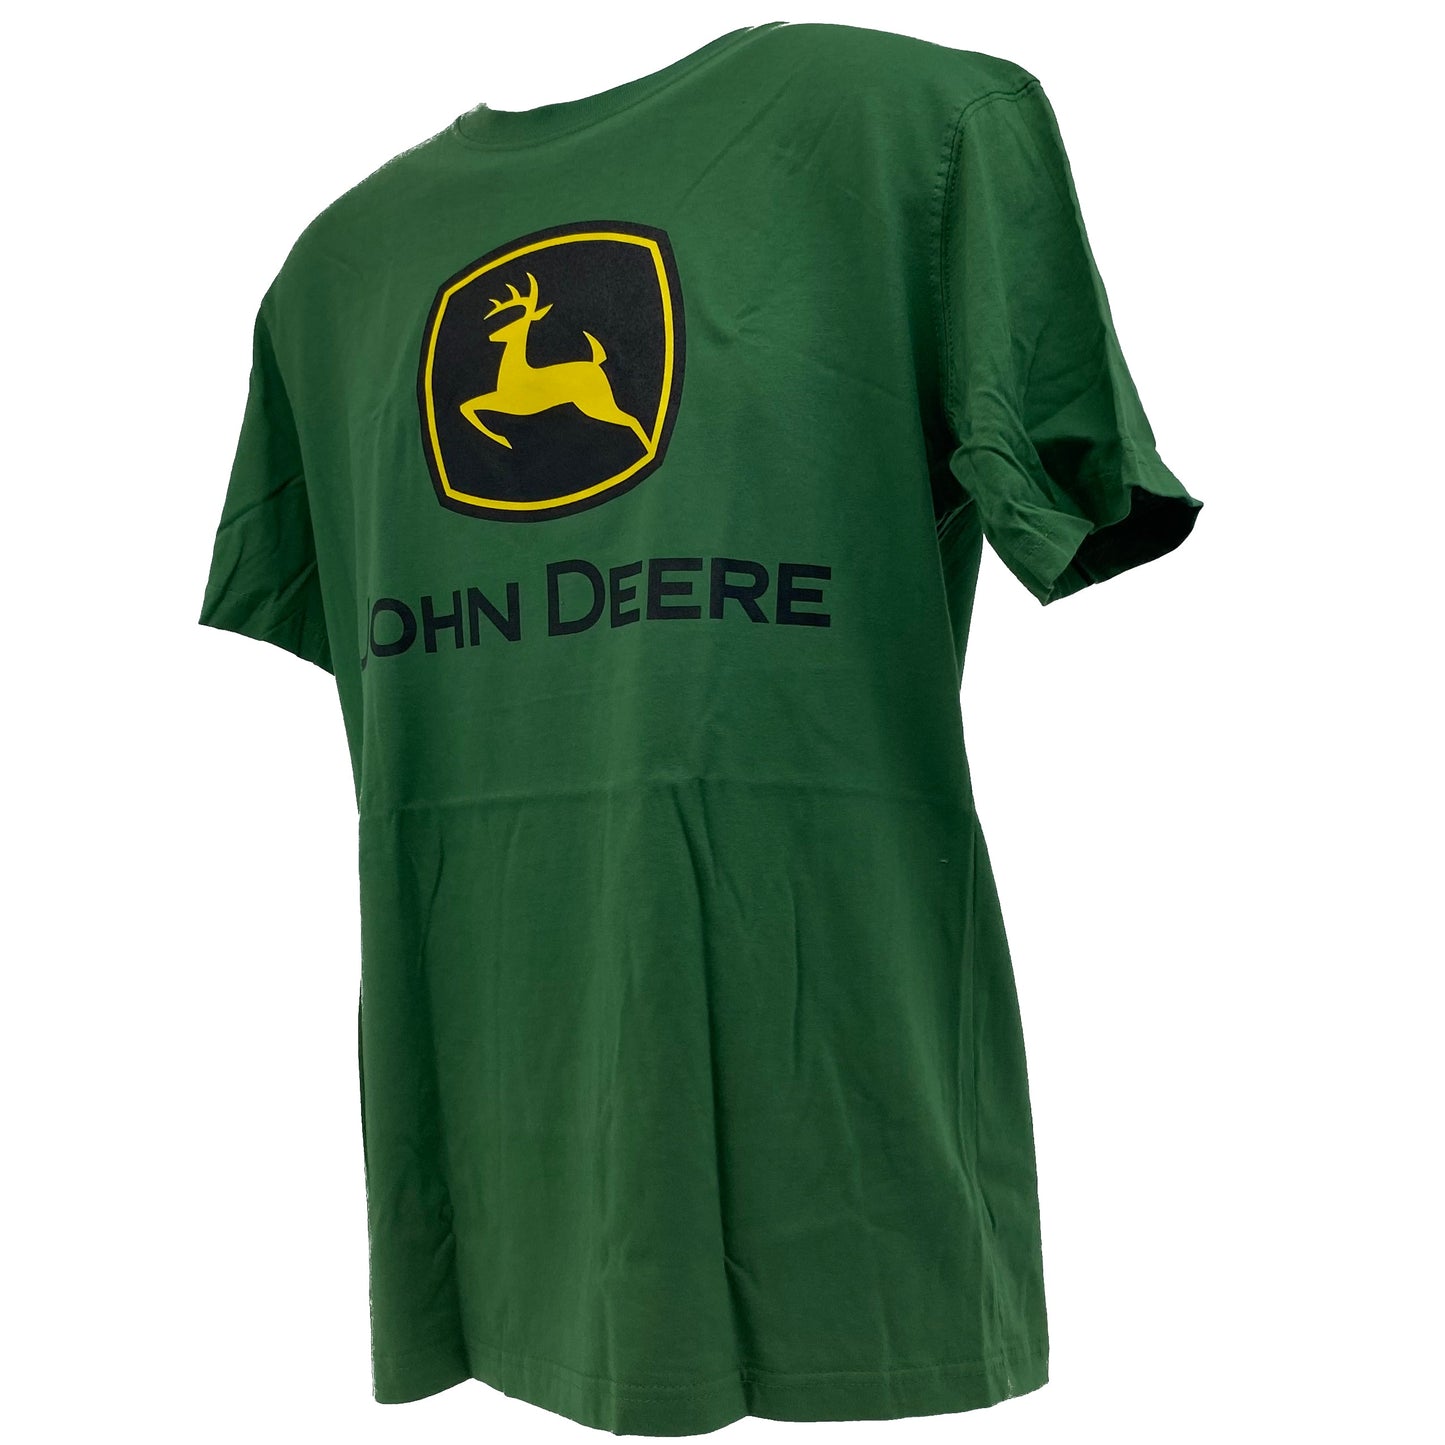 John Deere Green T-Shirt Medium - LP75682